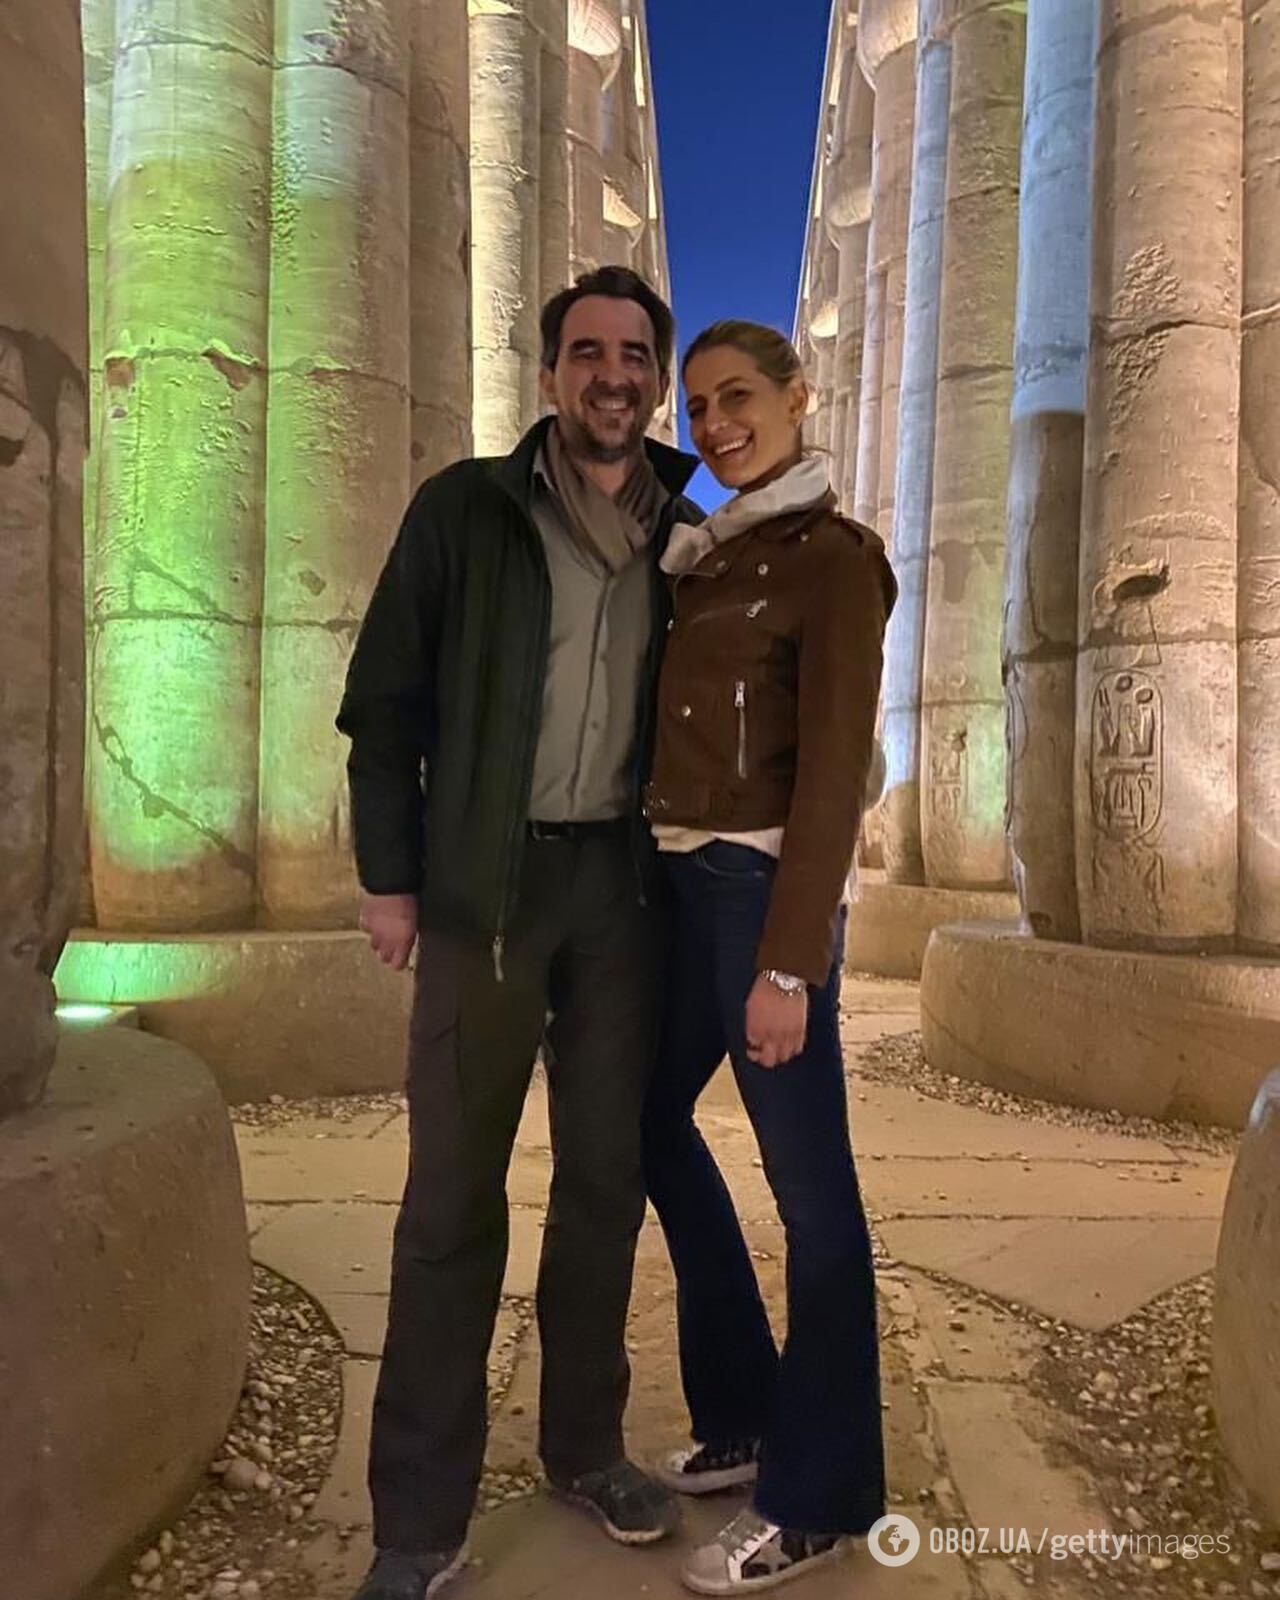 Грецький принц Ніколаос і принцеса Тетяна шокували новиною про розлучення після 14 років шлюбу